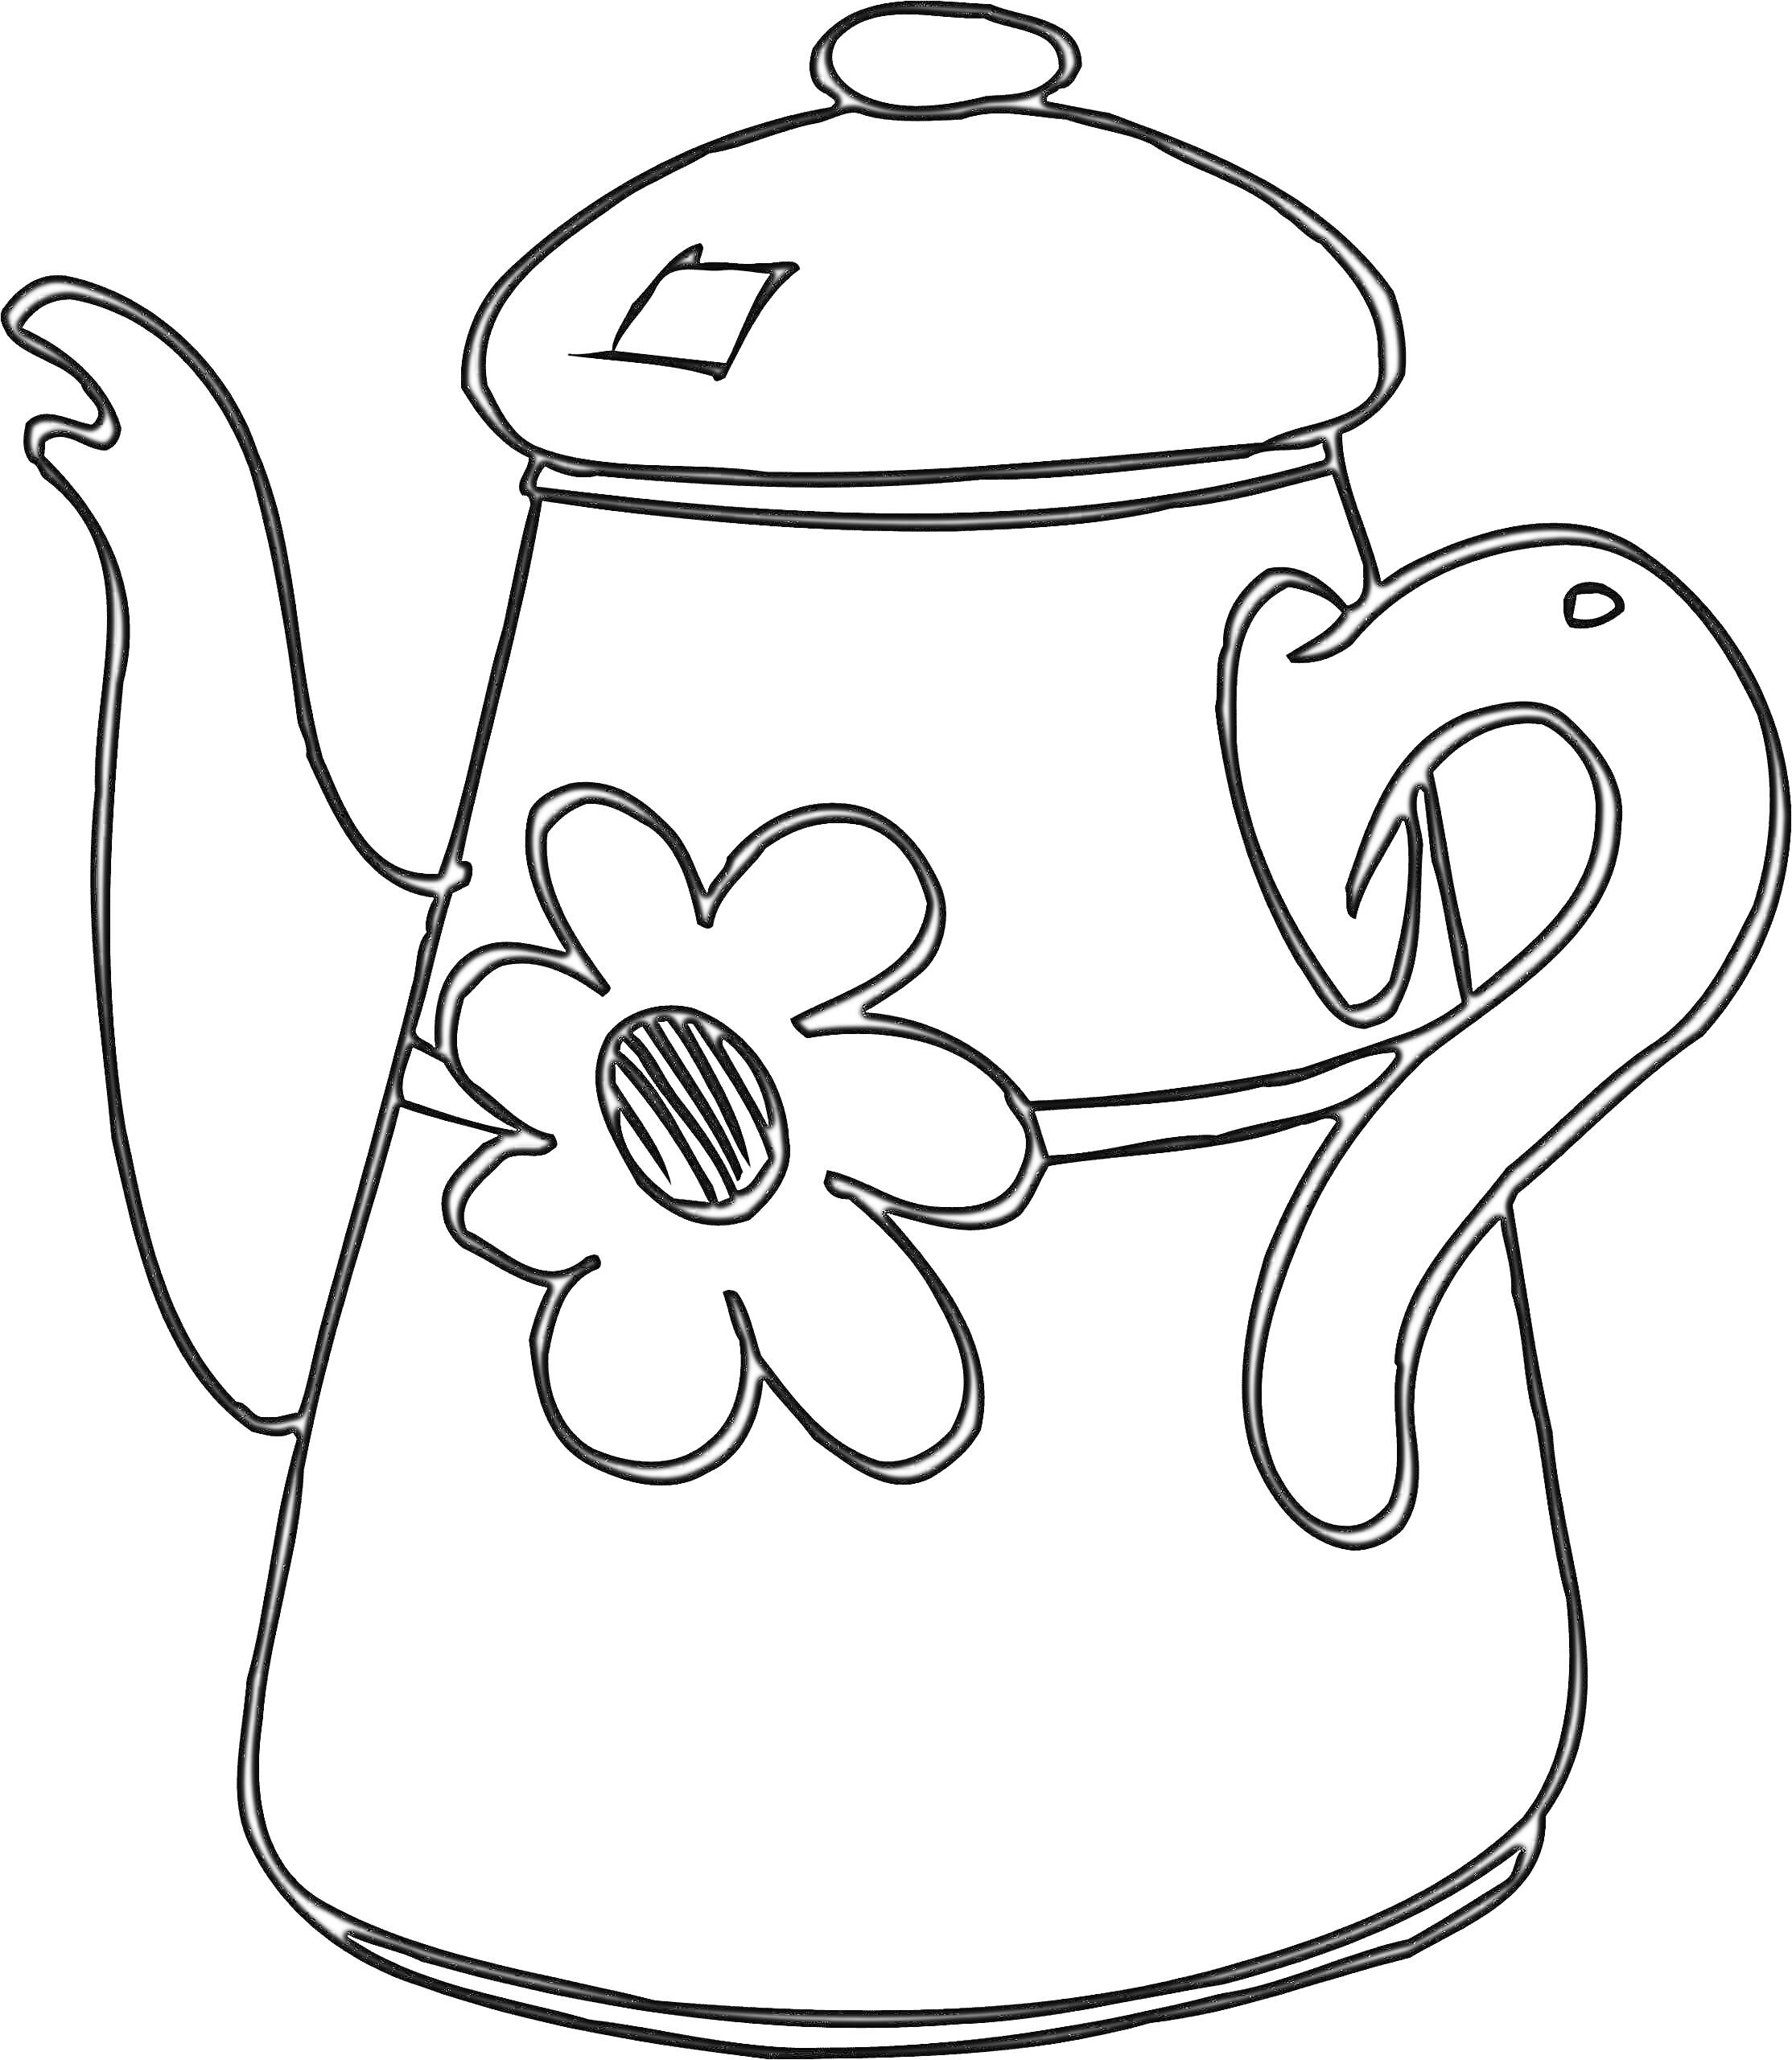 Раскраска Чайник с цветком и изогнутым носиком